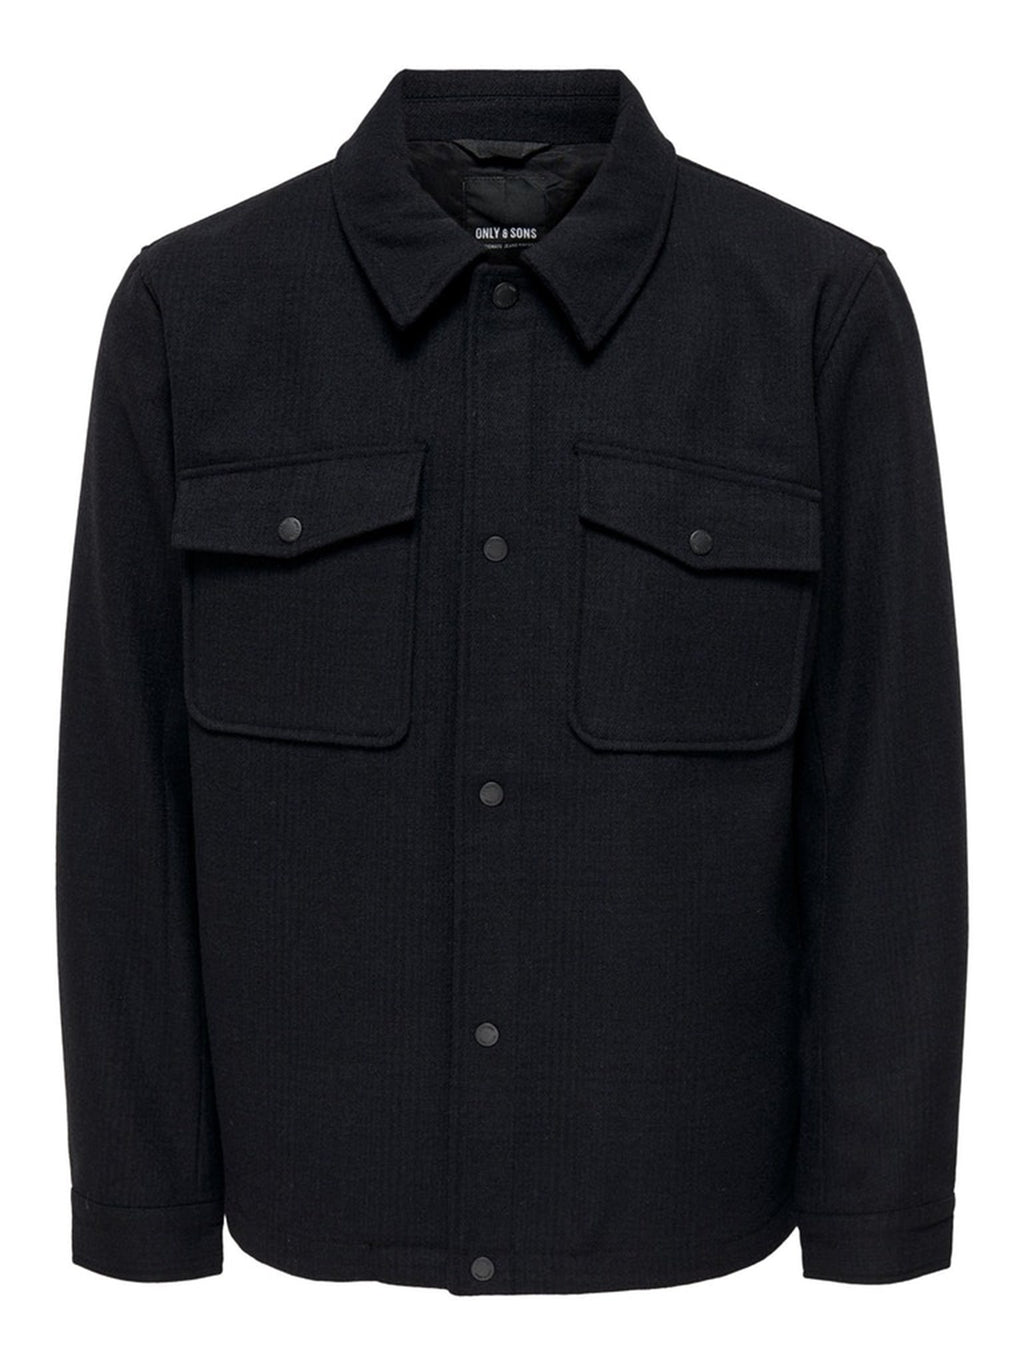 Dex Patterned Jacket- Black